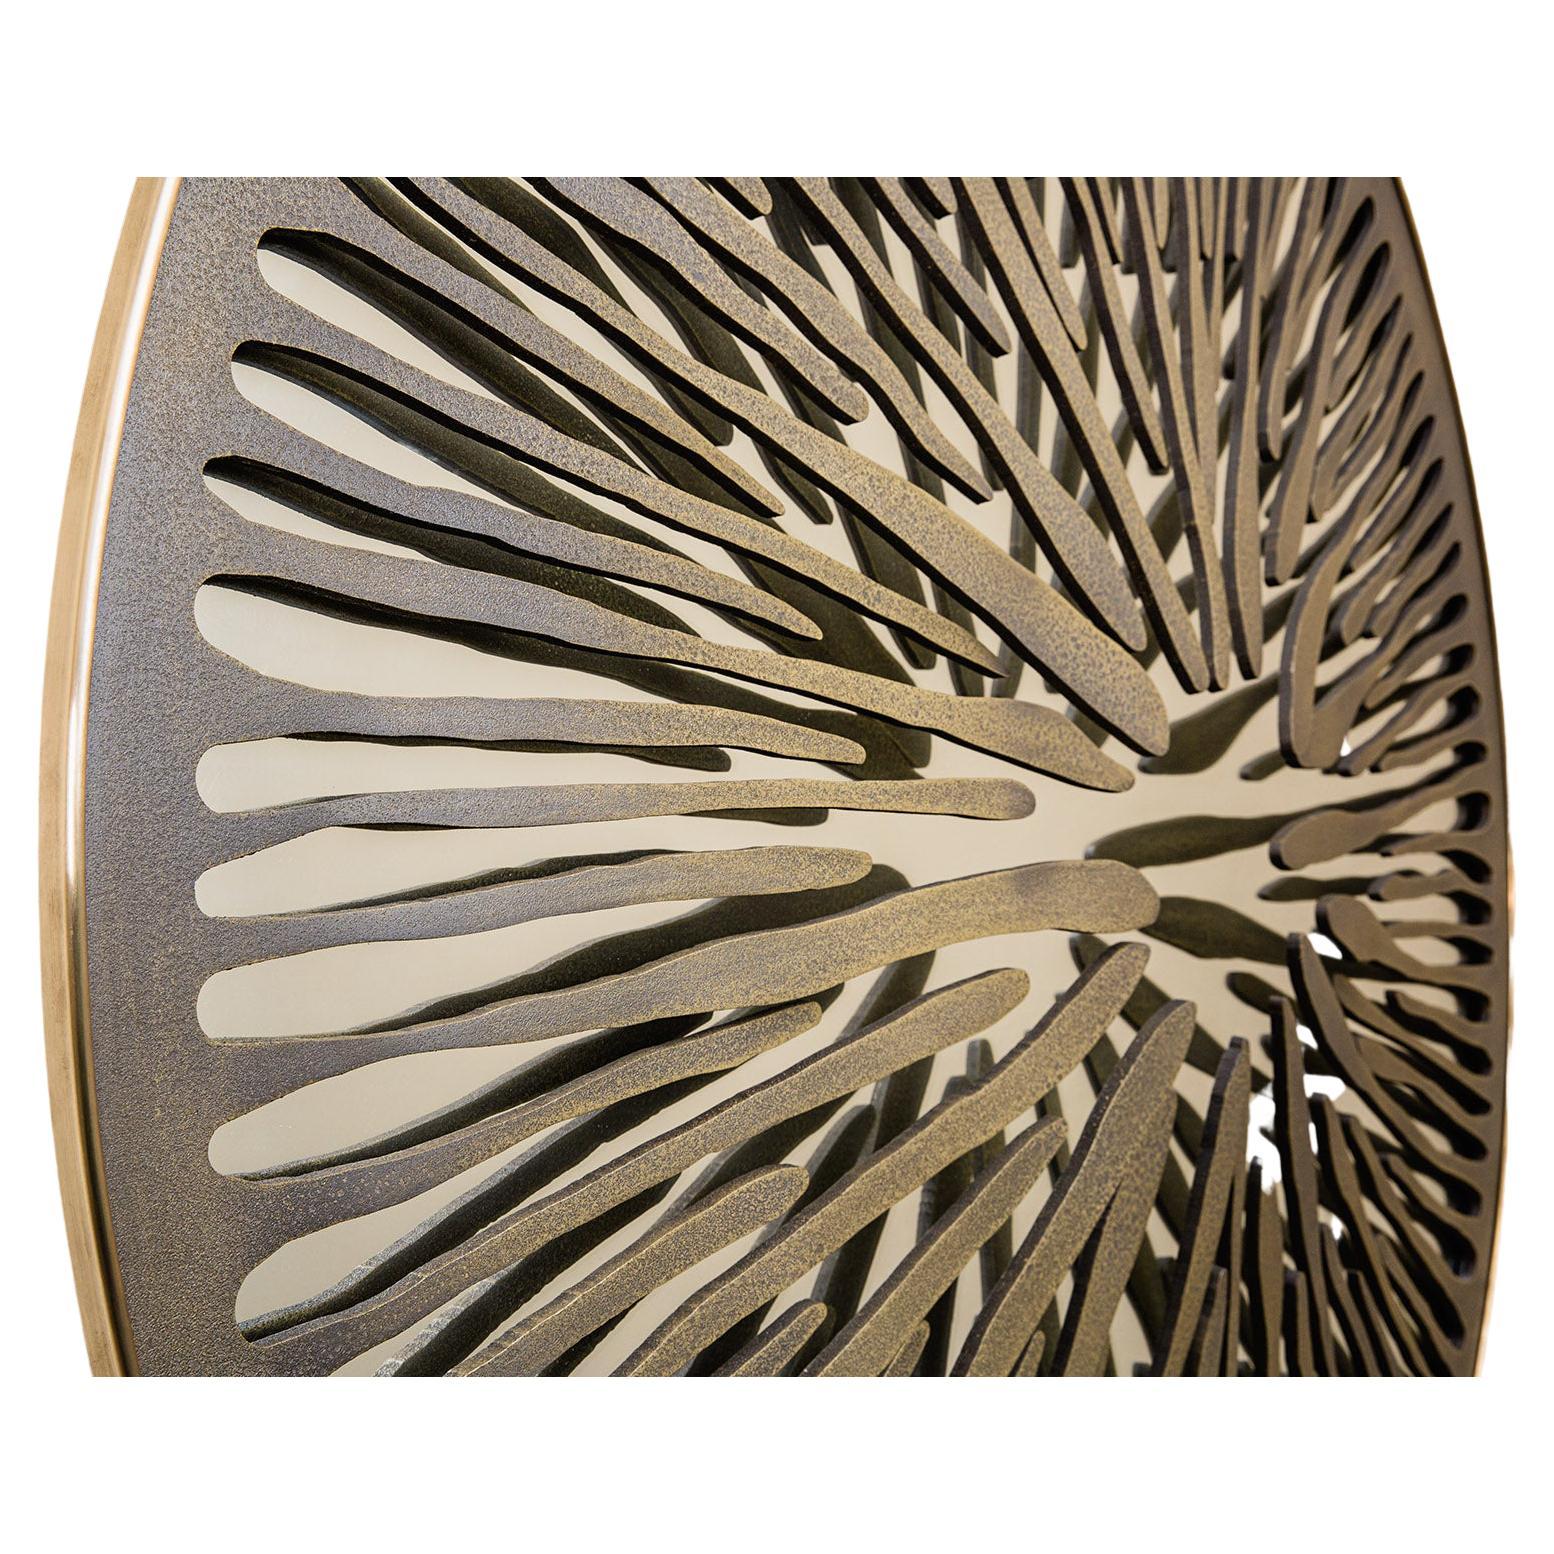 Mirror Pupil, entworfen von Gianluca Pacchioni, der von der Galerie Negropontes in Paris, Frankreich, vertreten wird. 

Der Mailänder Künstler Gianluca Pacchioni entdeckte seine Leidenschaft für Metallarbeiten in den 1990er Jahren, als er die